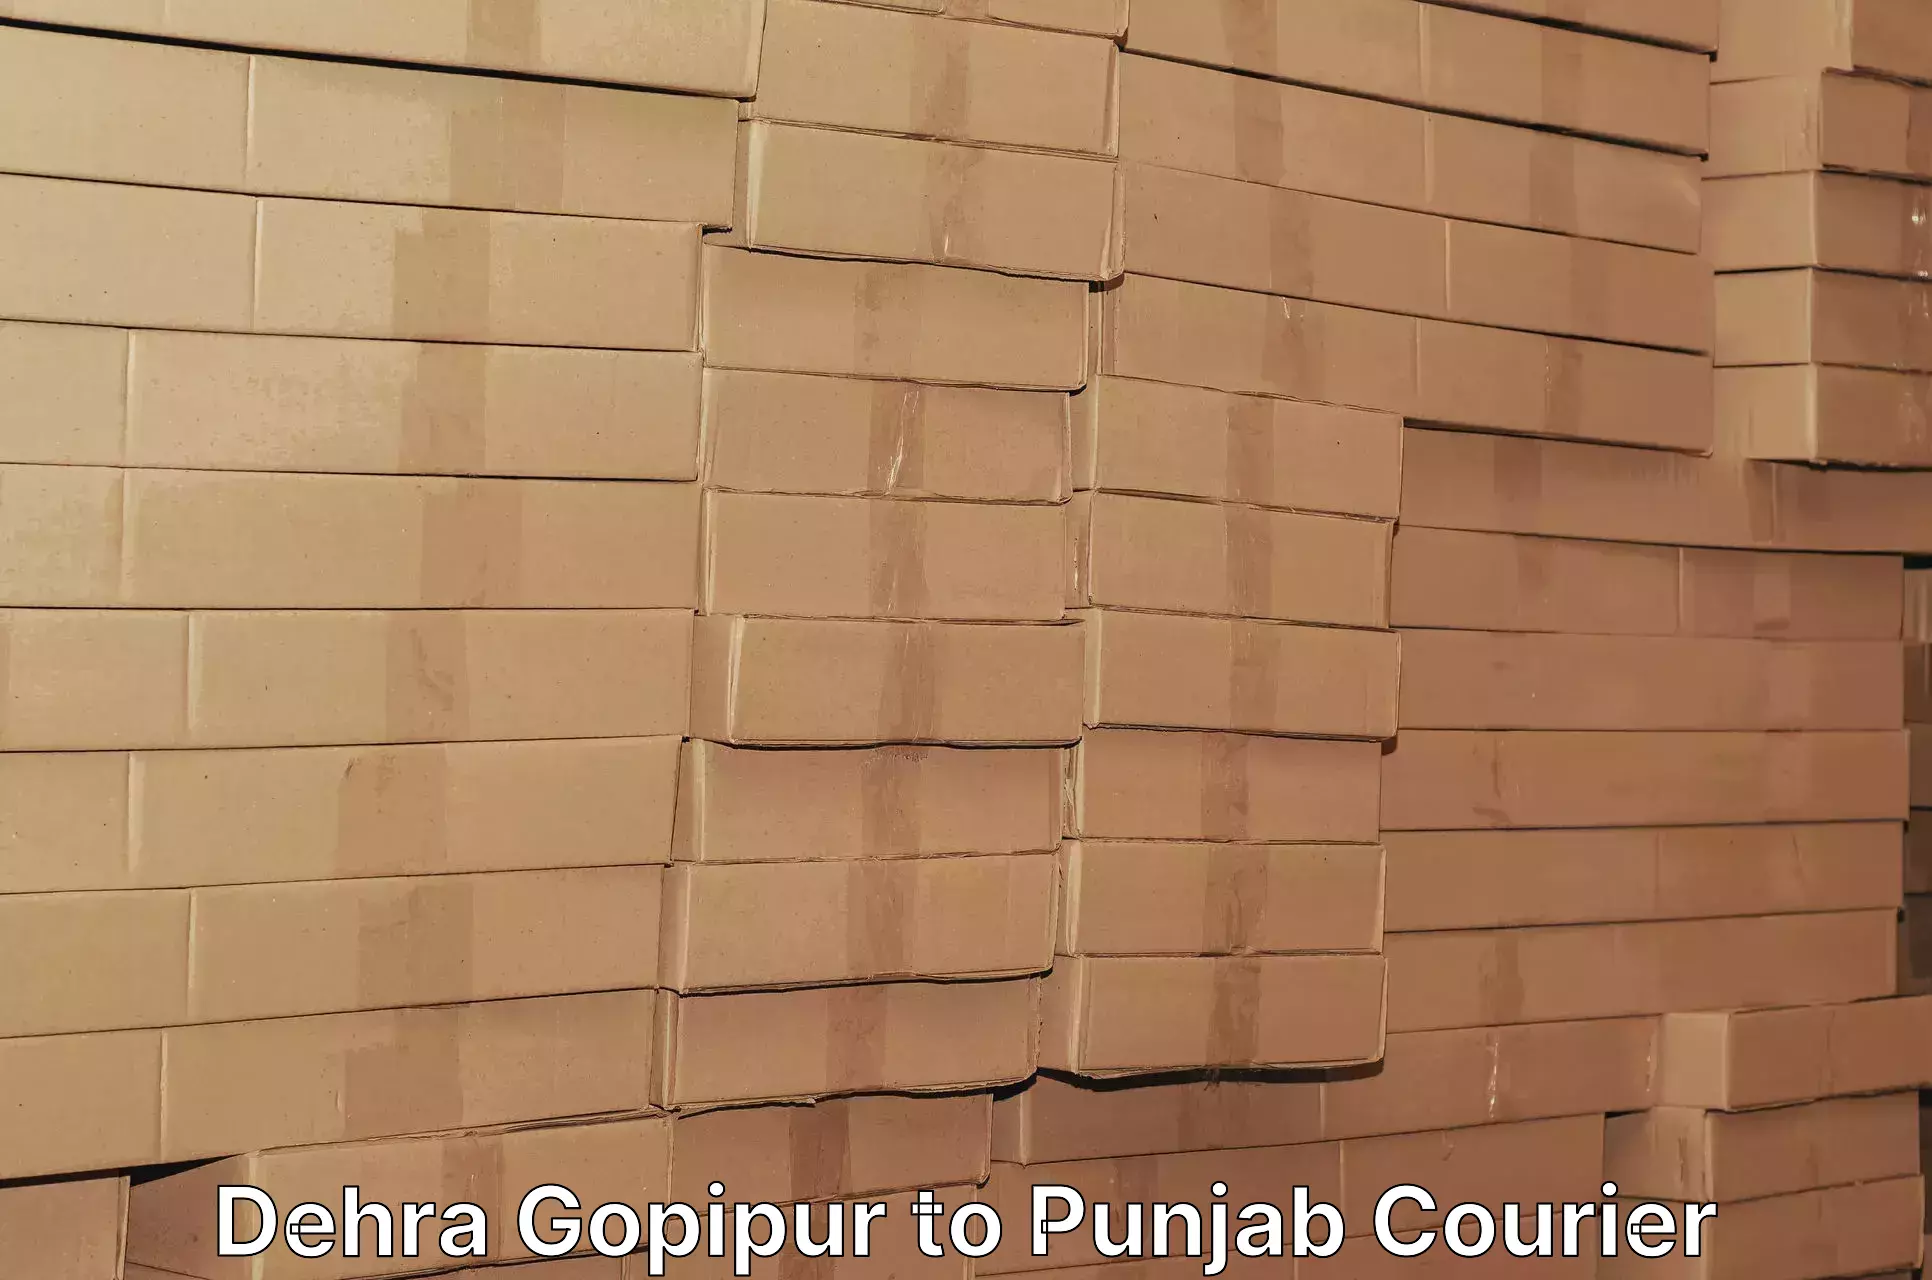 Pharmaceutical courier Dehra Gopipur to Kotkapura